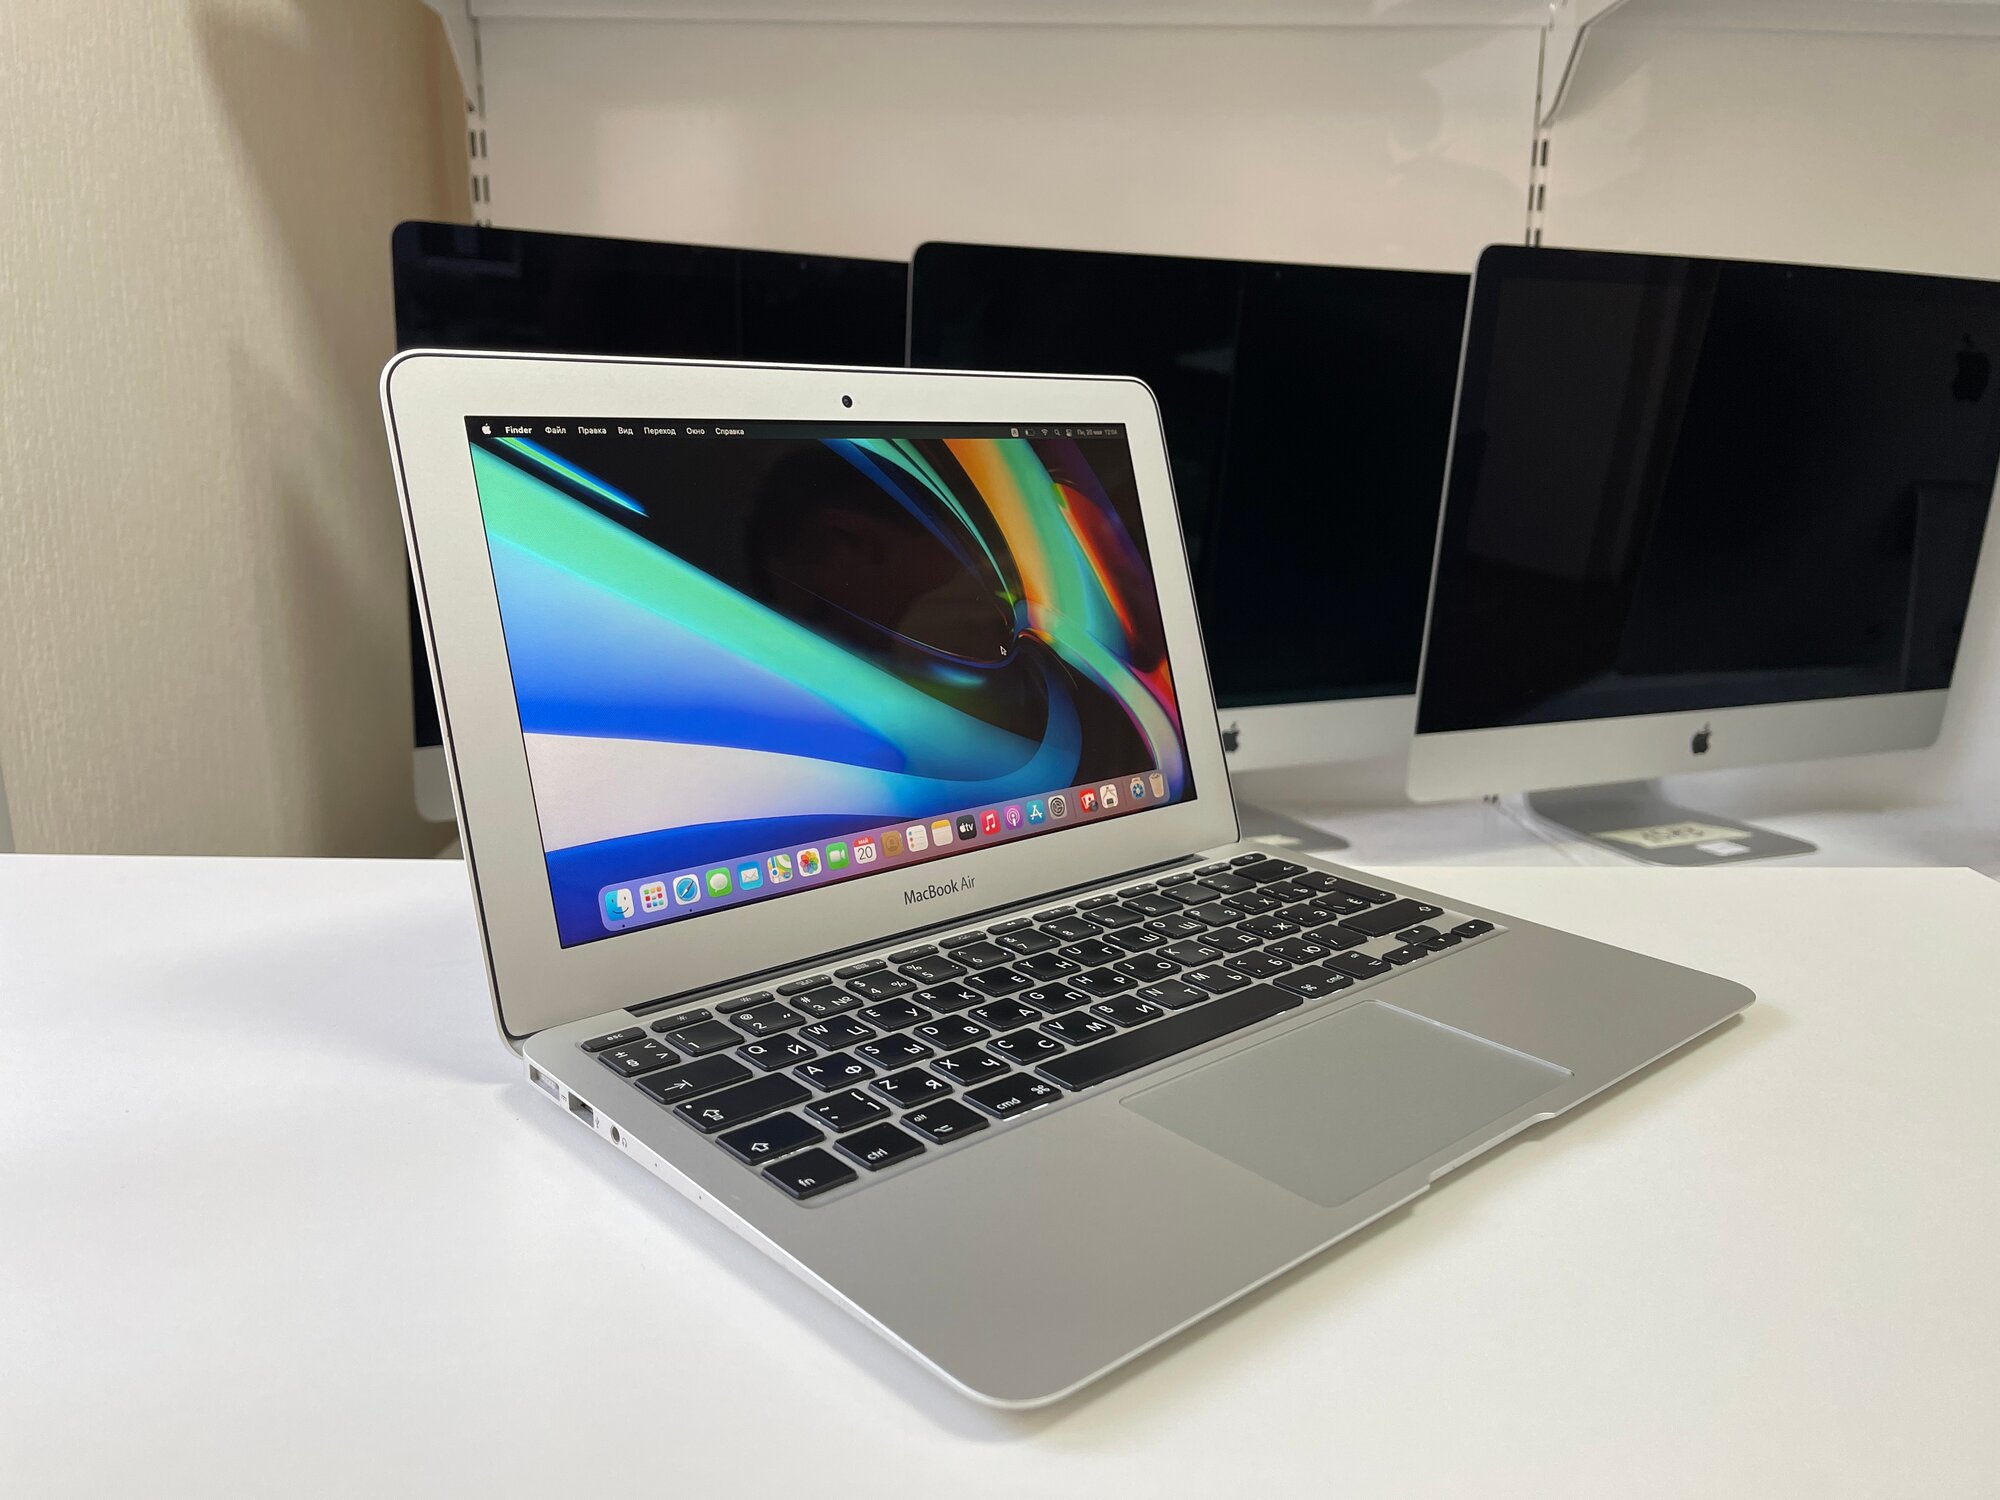 Macbook Air 11" 2015 i5 1.6 GHz 4 Gb RAM 120 Gb SSD